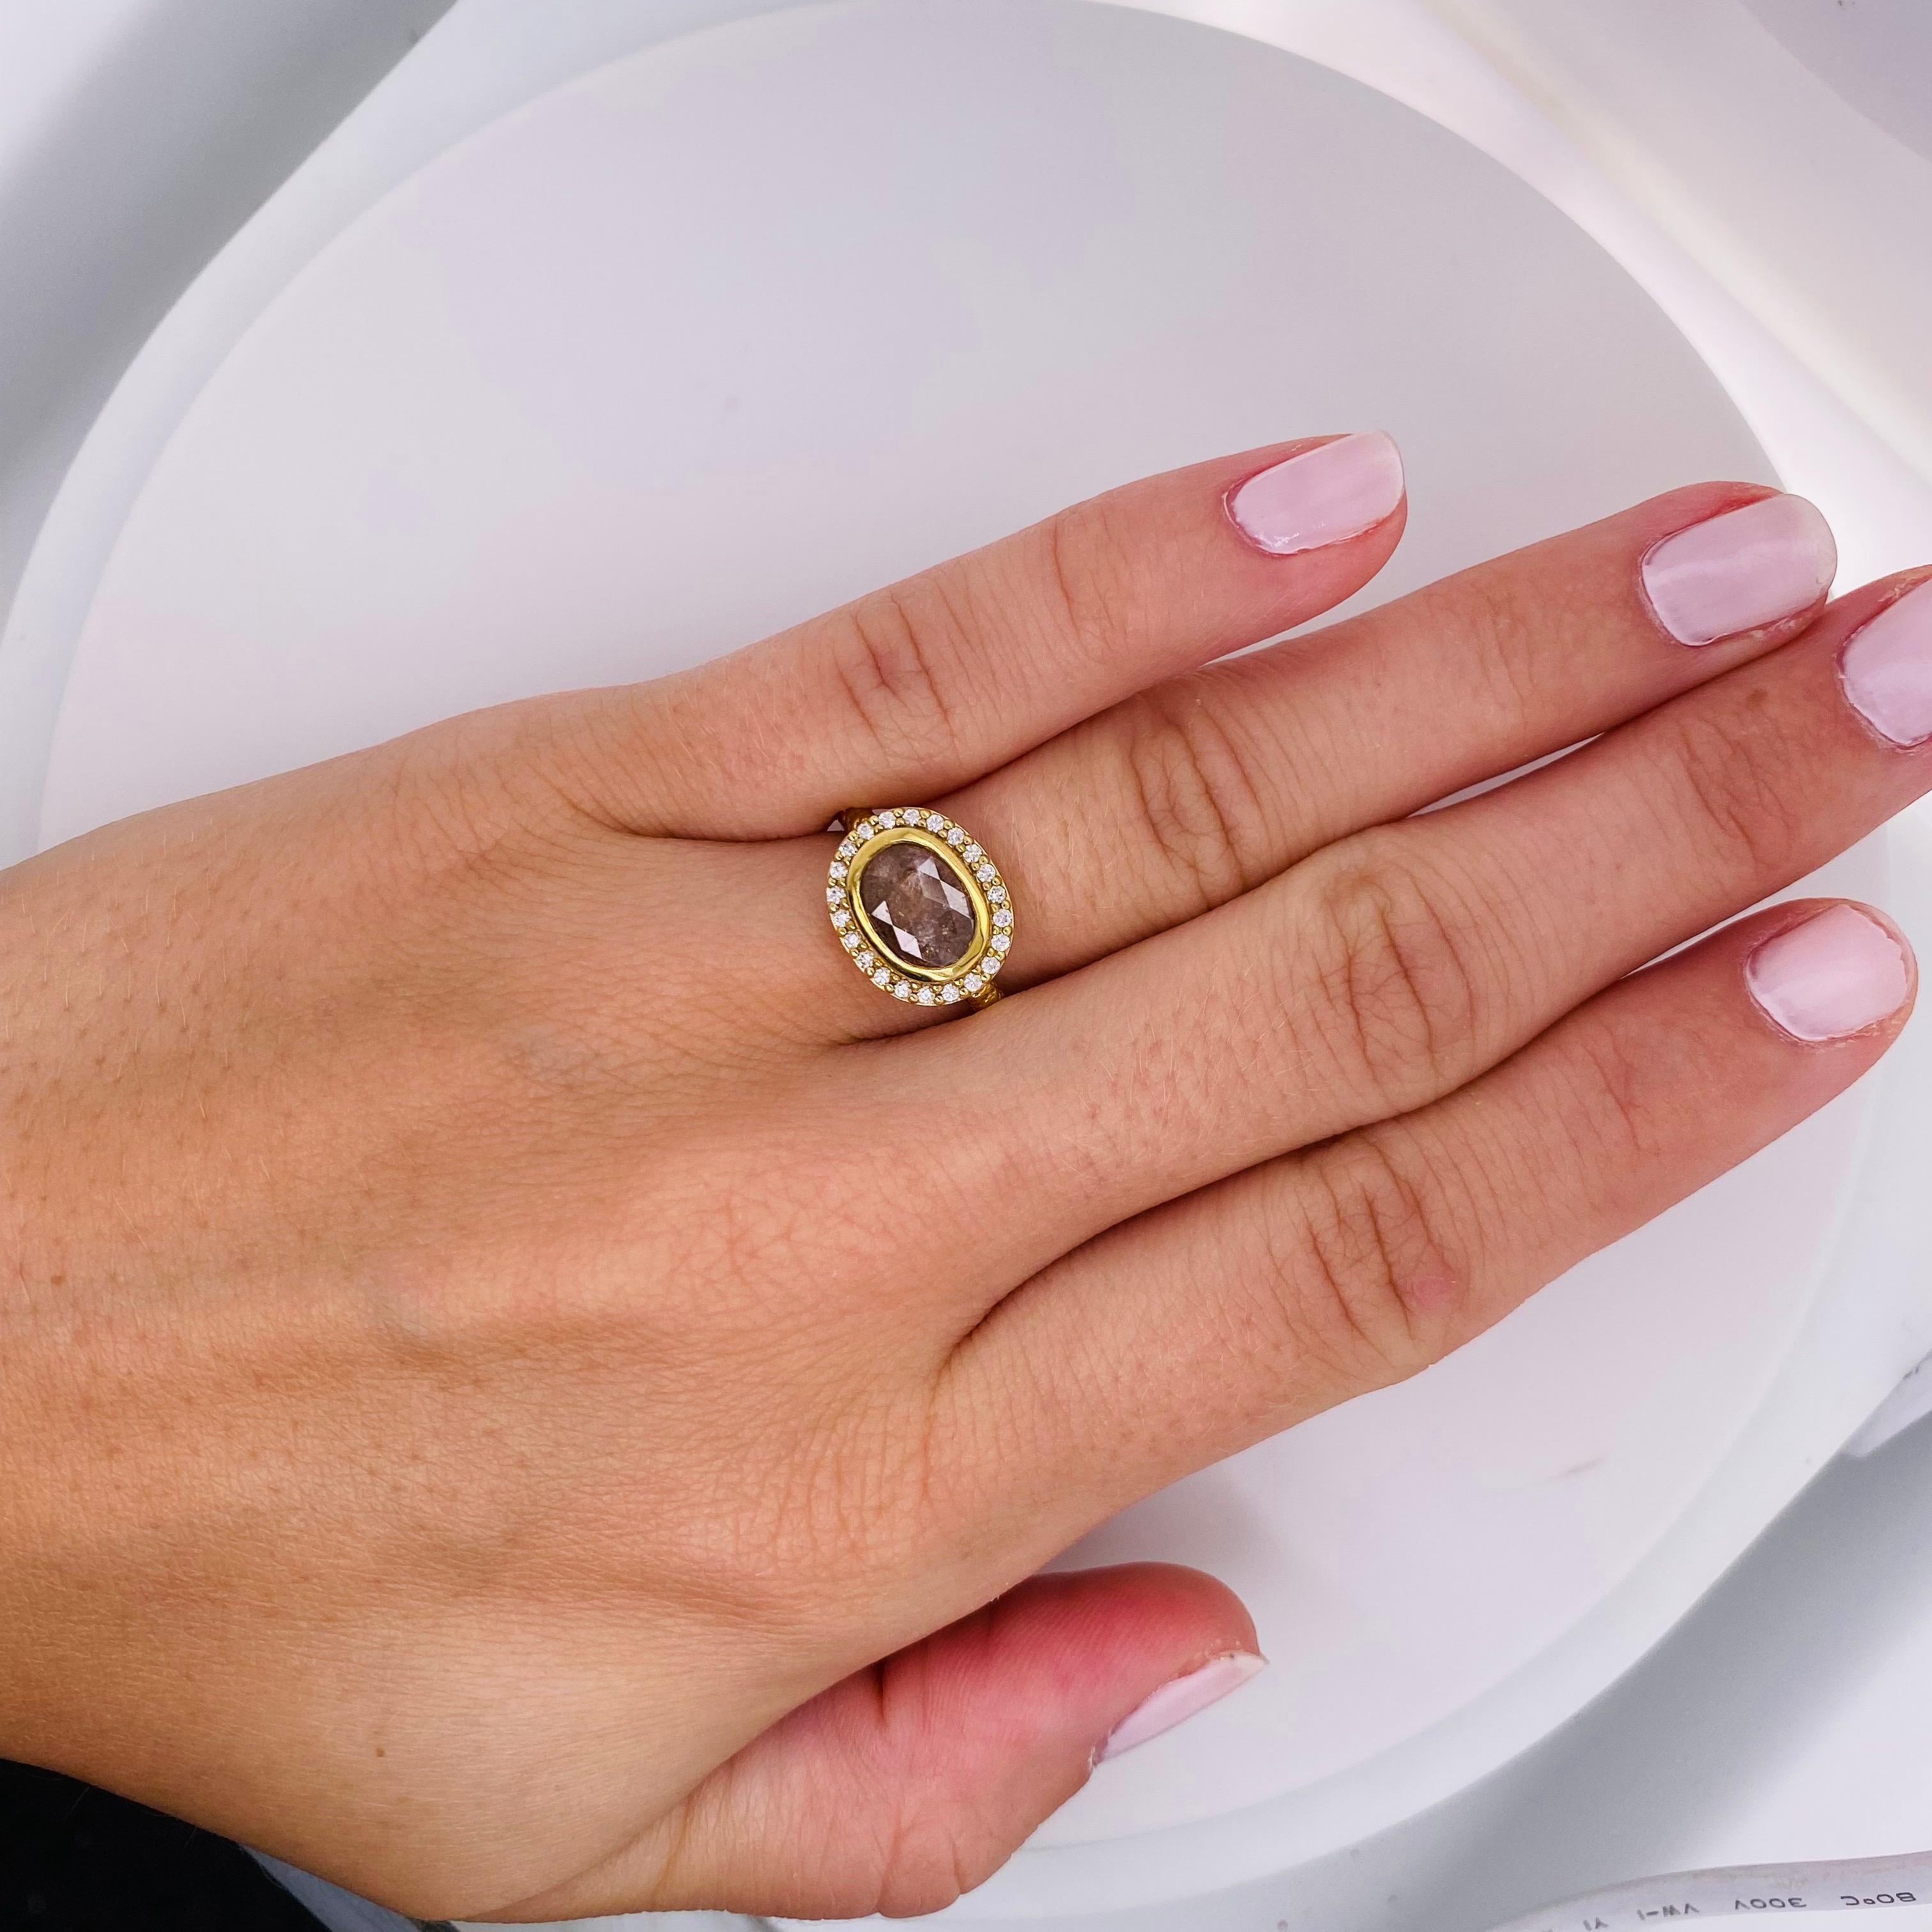 Original Rough Pink Diamond Engagement Ring w Diamond Set East to West. Cette bague de fiançailles en diamant brut est une œuvre d'art vivante. Whiting avec un diamant brut de 1,54 carat serti d'est en ouest dans un chaton en or jaune 18 carats et